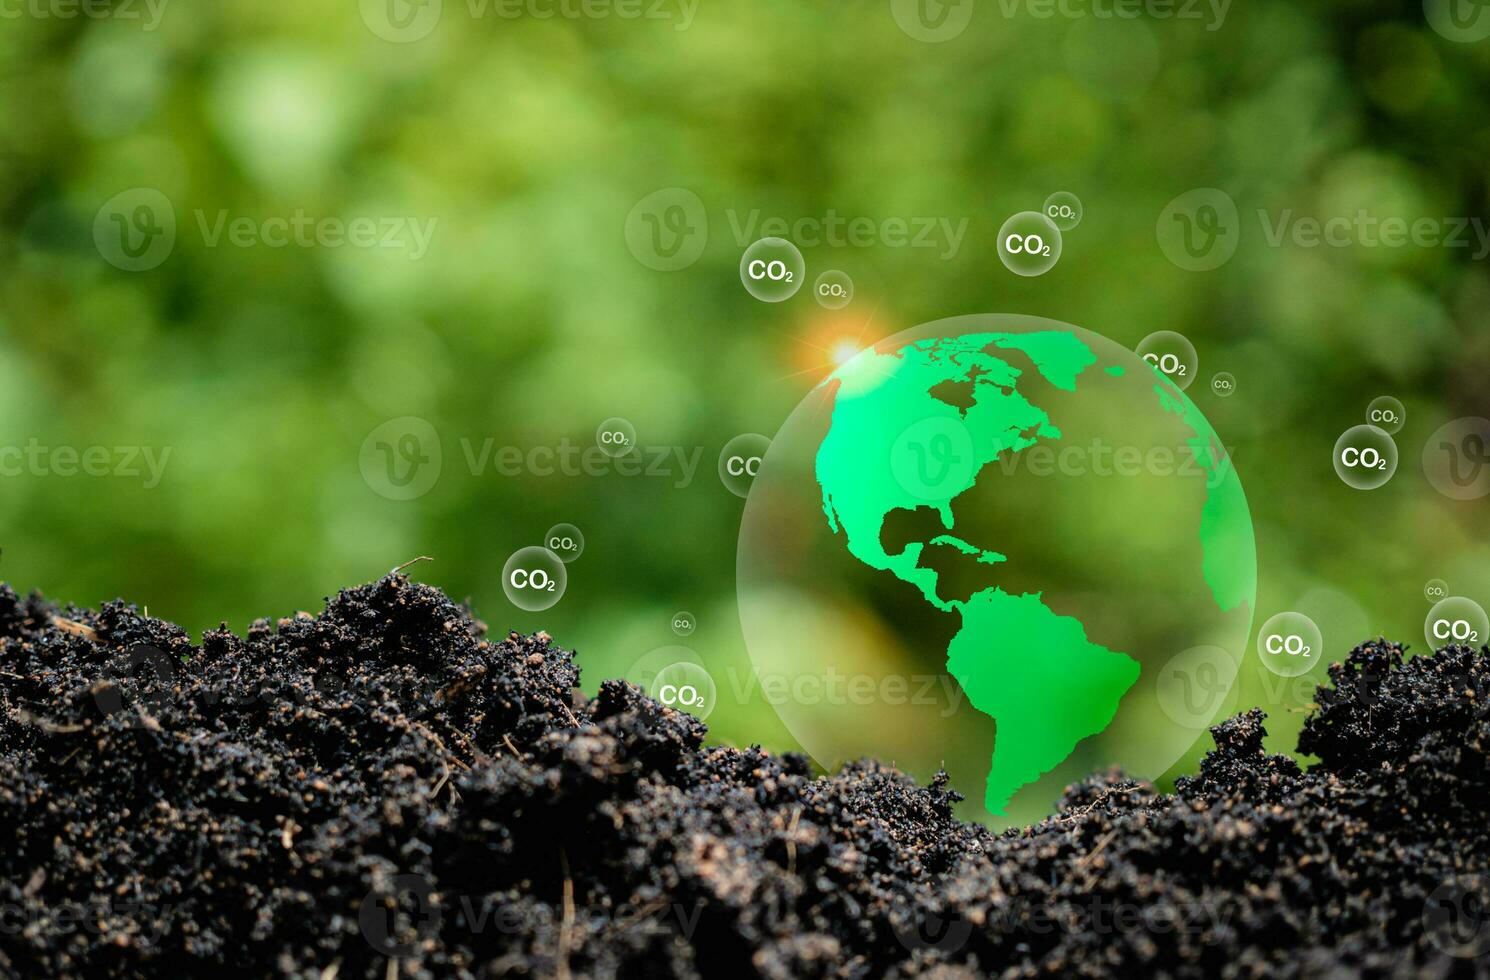 co2 utsläpp minskning begrepp, rena och vänlig miljö utan kol dioxid utsläpp. plantering träd till minska co2 utsläpp, miljö- skydd begrepp. foto